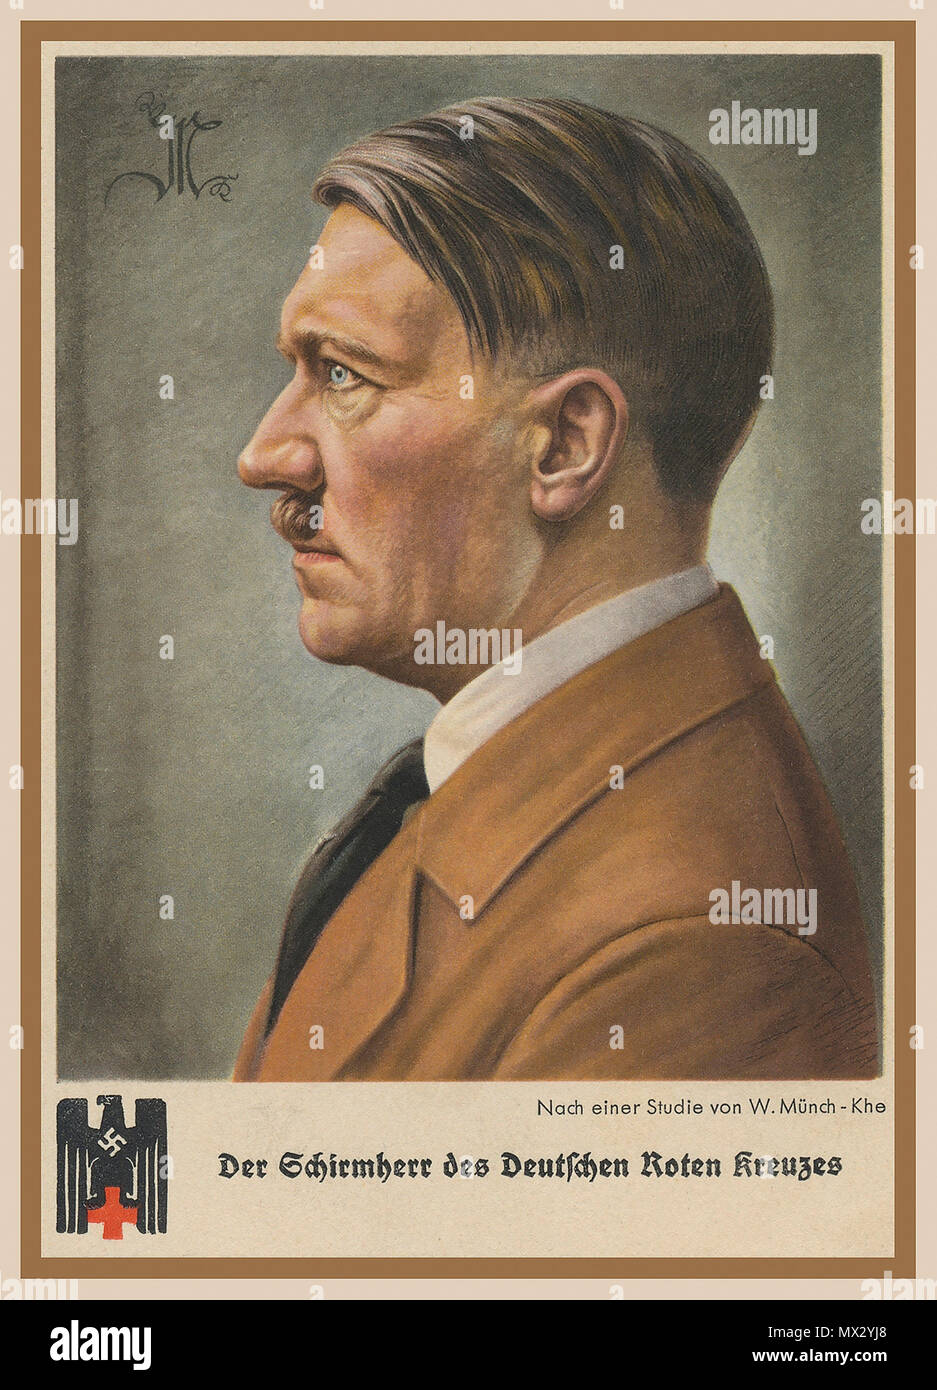 Jahrgang 1940 des nationalsozialistischen Deutschland Propaganda Postkarte mit Adolf Hitler portrait" der Schirmherr des Roten Kreuzes' mit Deutschen Adler Hakenkreuz und Rotes Kreuz Emblem Stockfoto